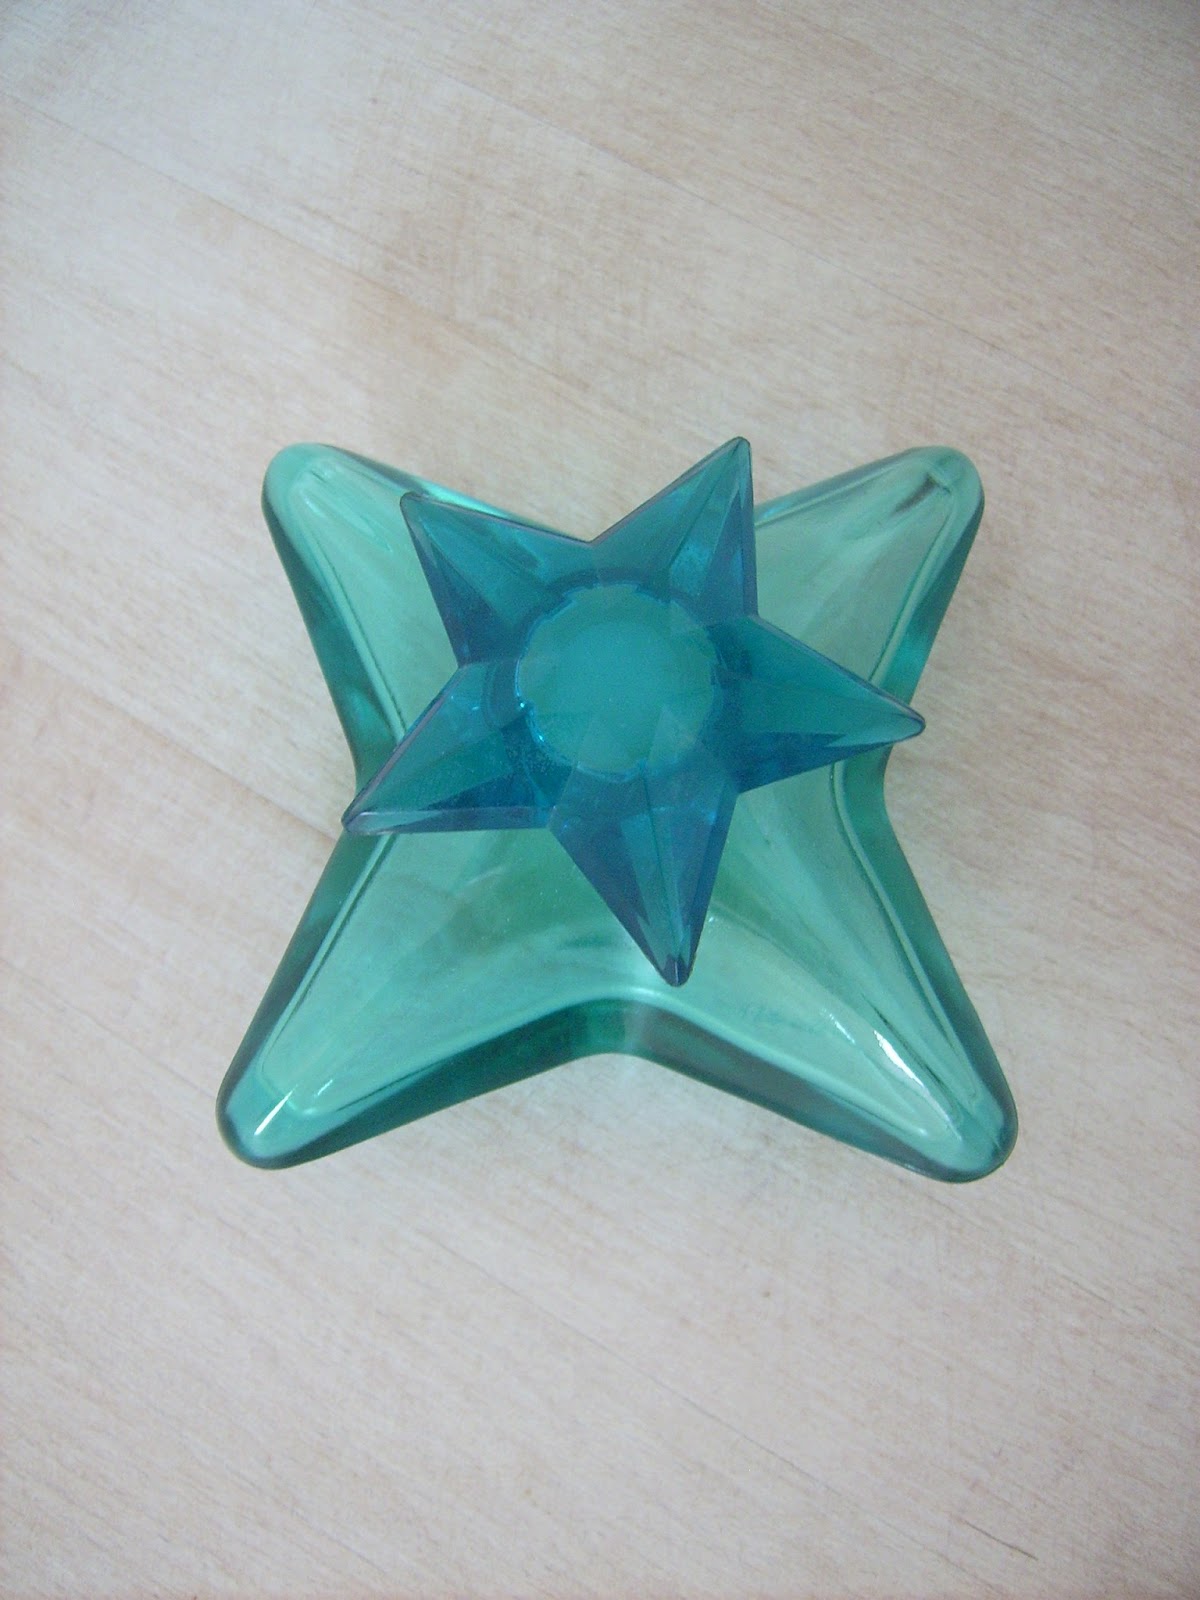 blue star bottle perfume